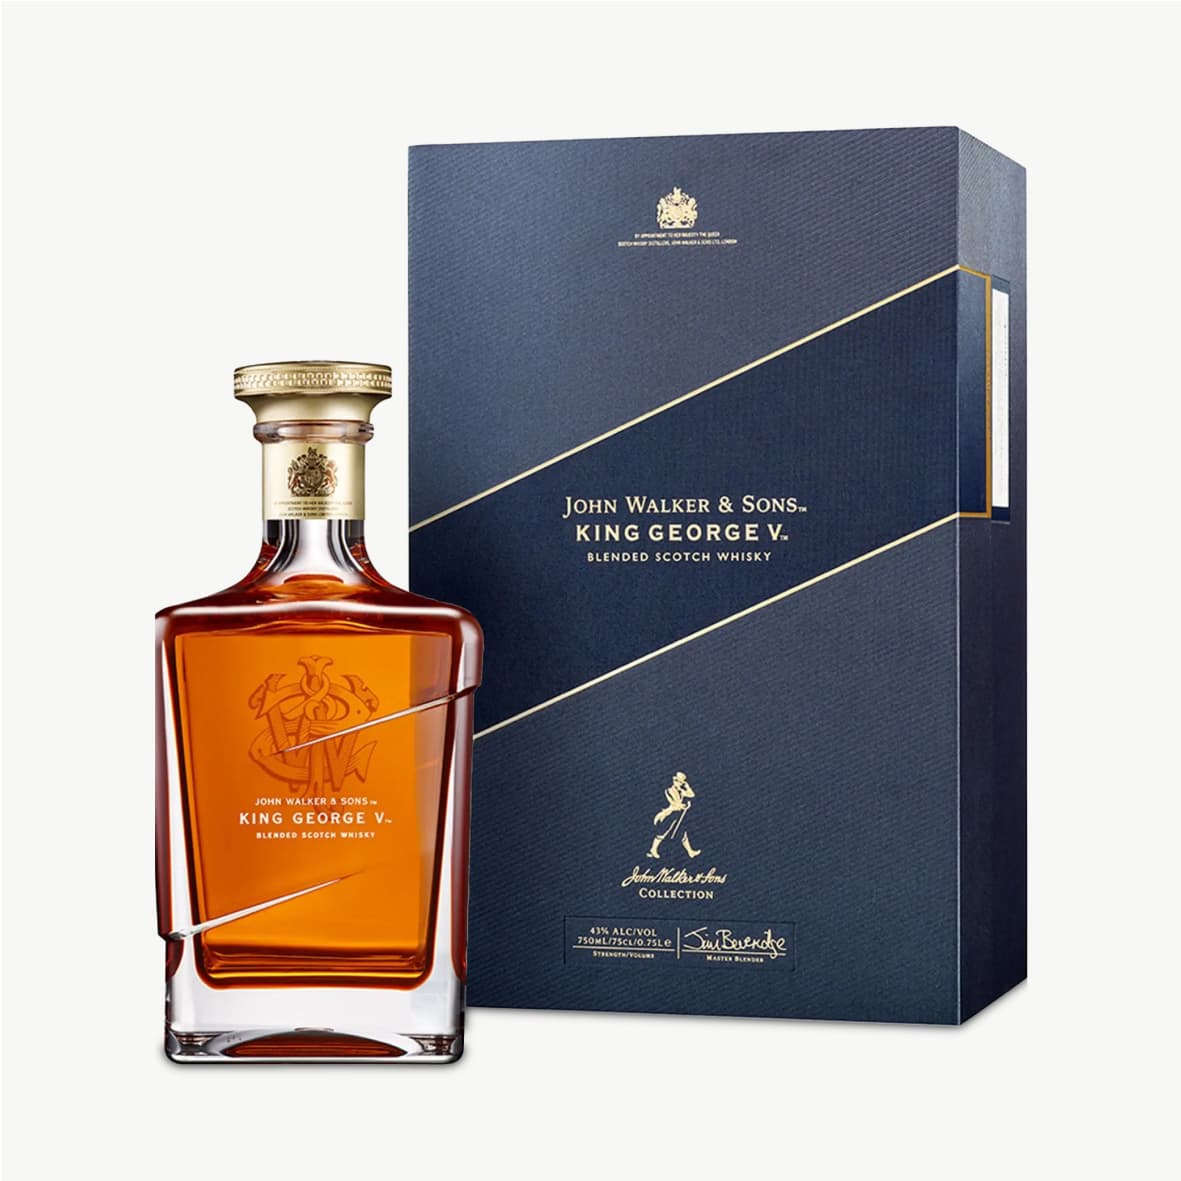 John Walker & Sons King George V Blended Scotch Whisky front bottle shot with packaging